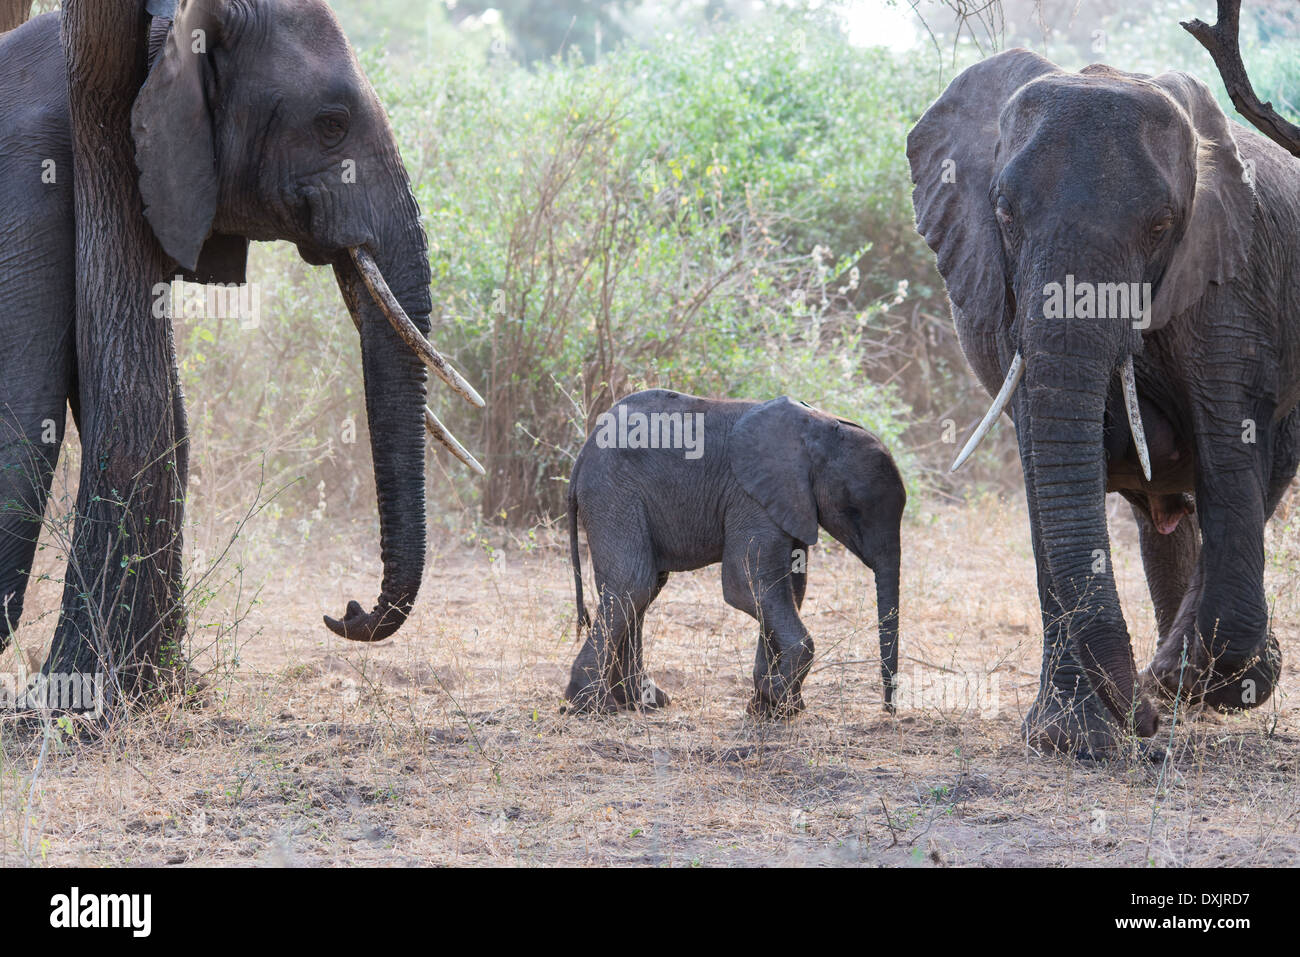 An elephant family in Tanzania Stock Photo